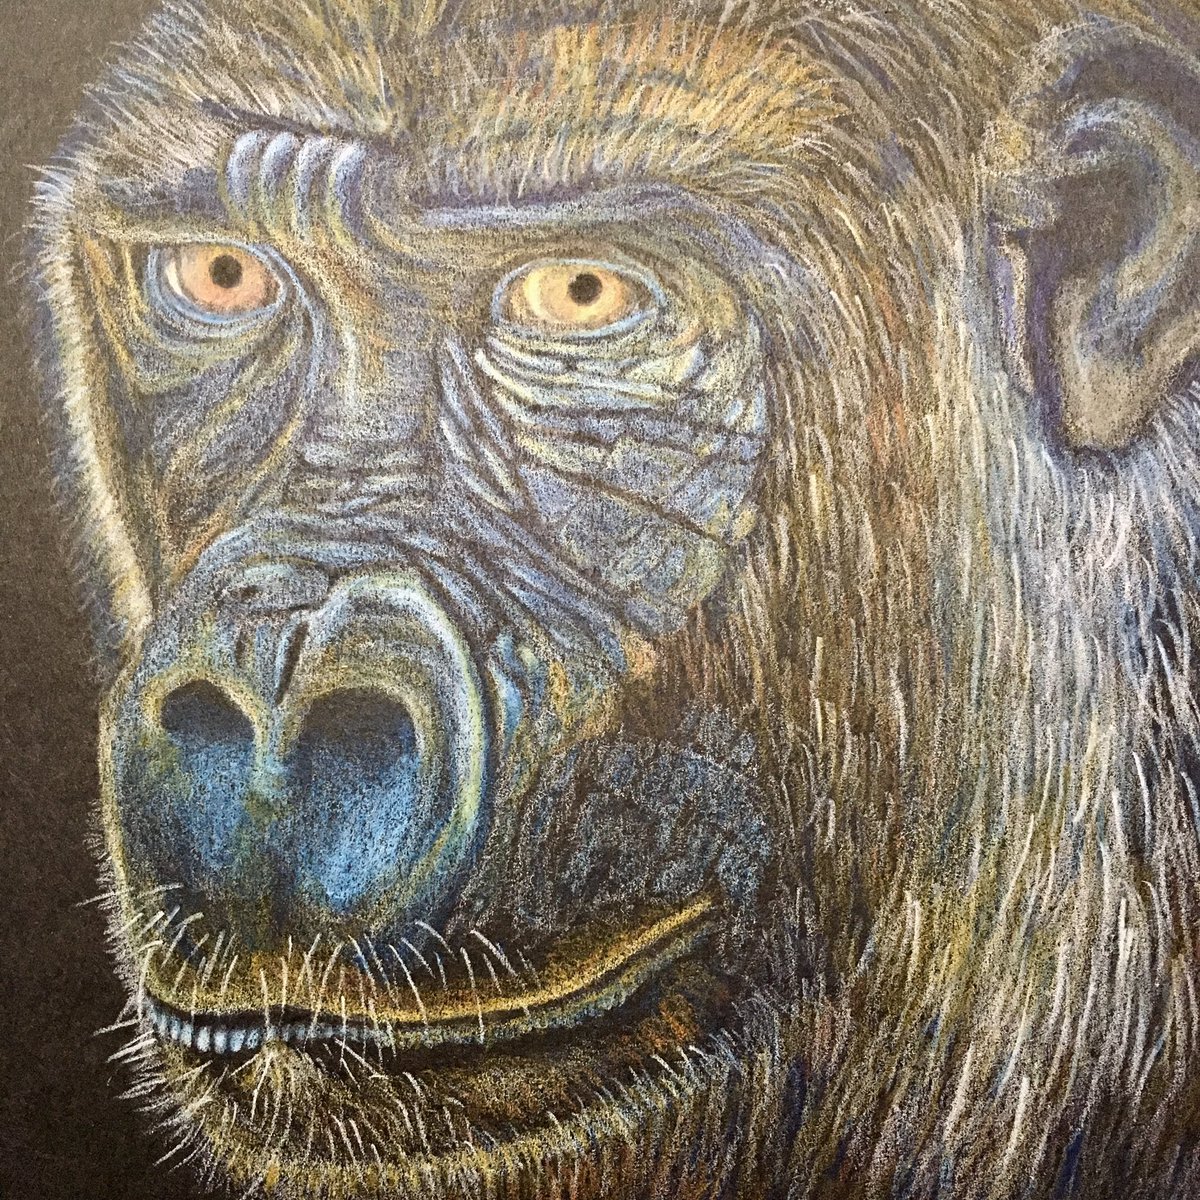 Close up of my artwork with more progress! #artistsontwitter #prismacolor #gorillaart #artofanimals #artists #ArtistOnTwitter #artforsale #artfestival